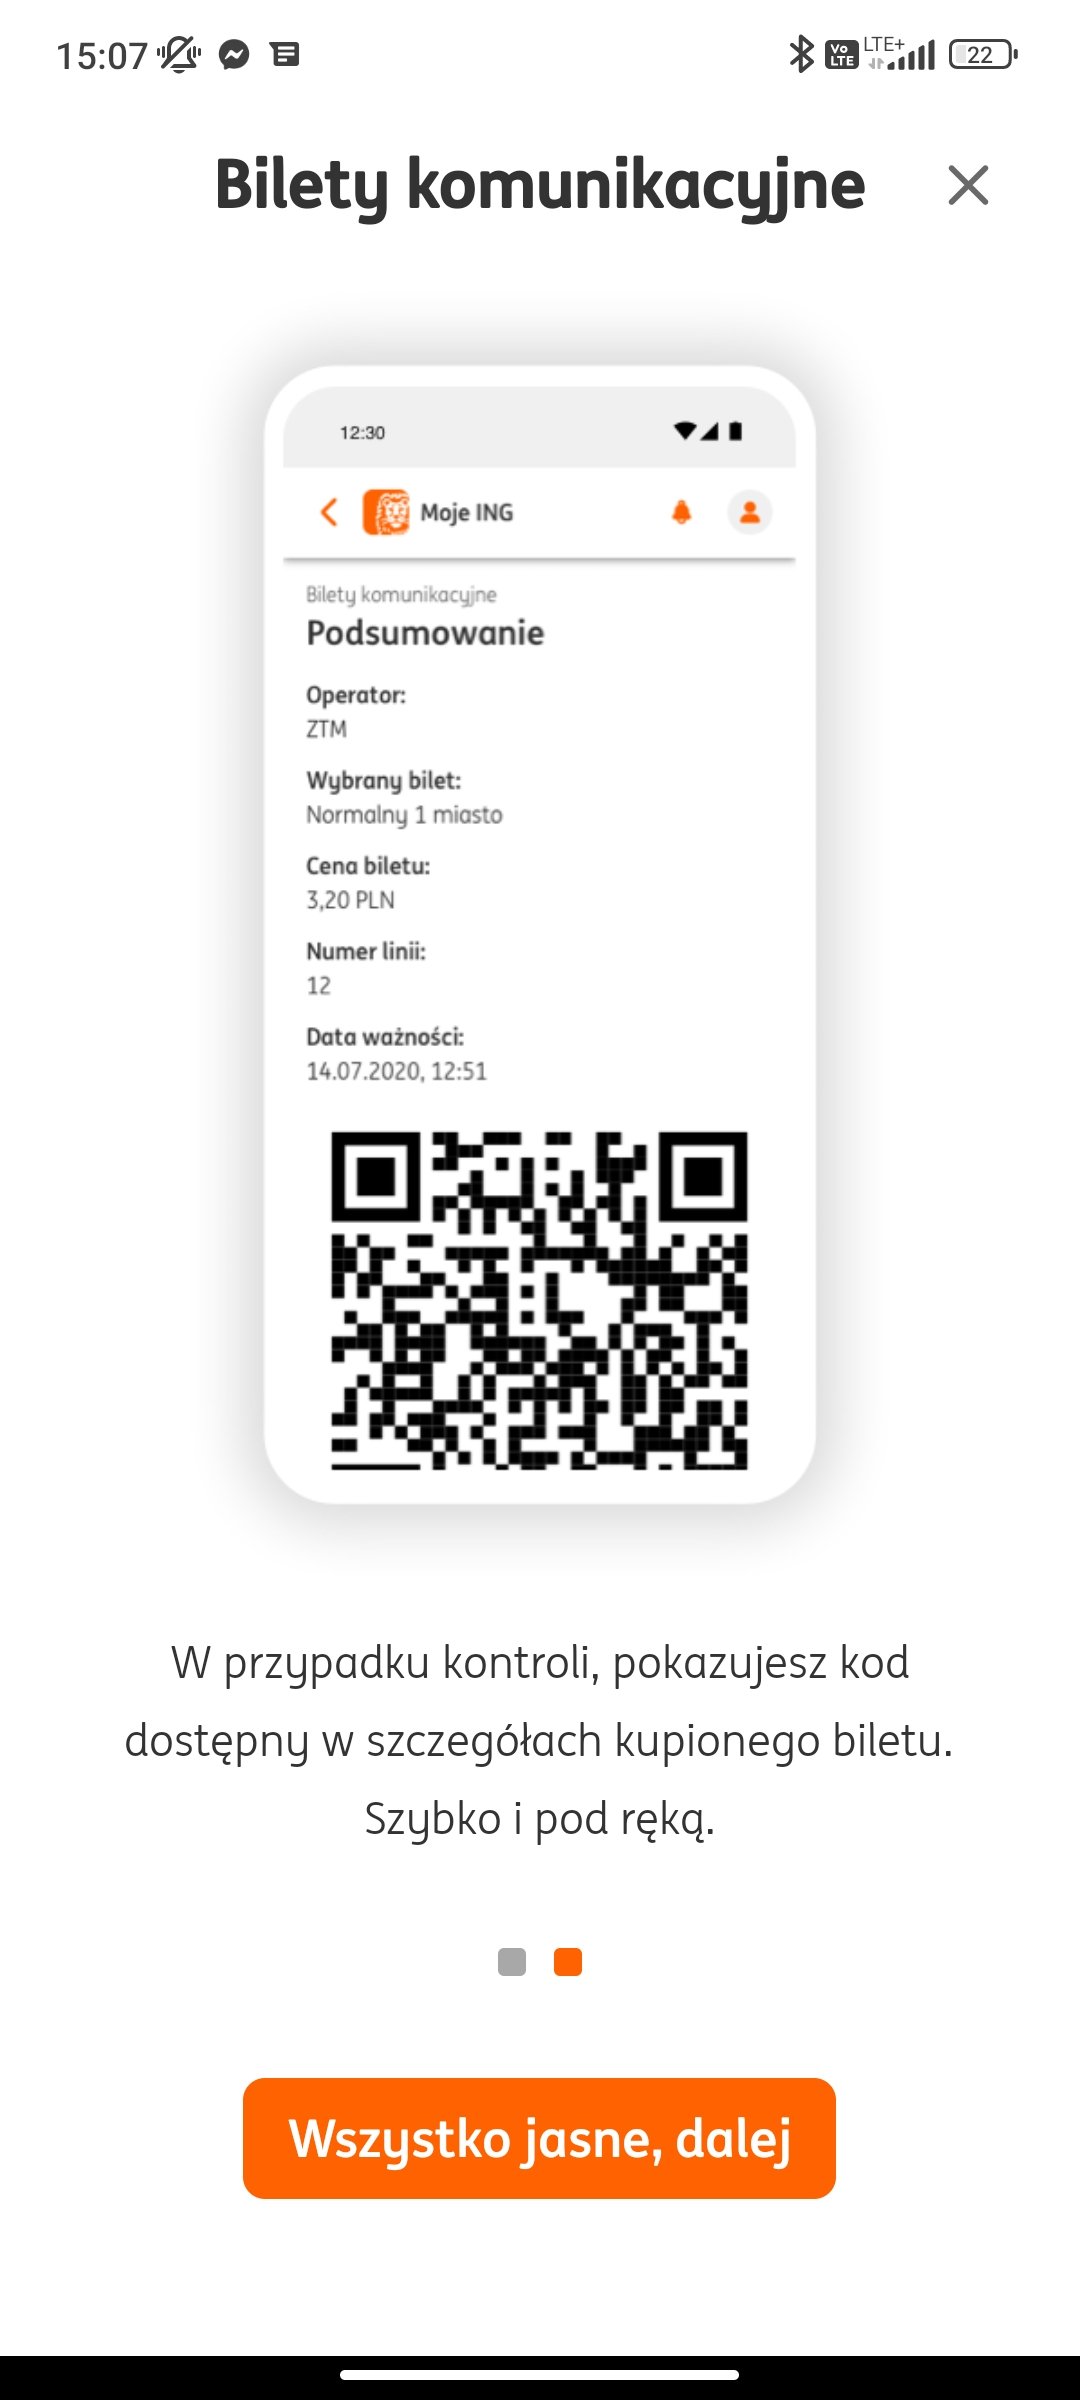 ING Bank Śląski Moje ING aplikacja bilety na komunikację miejską